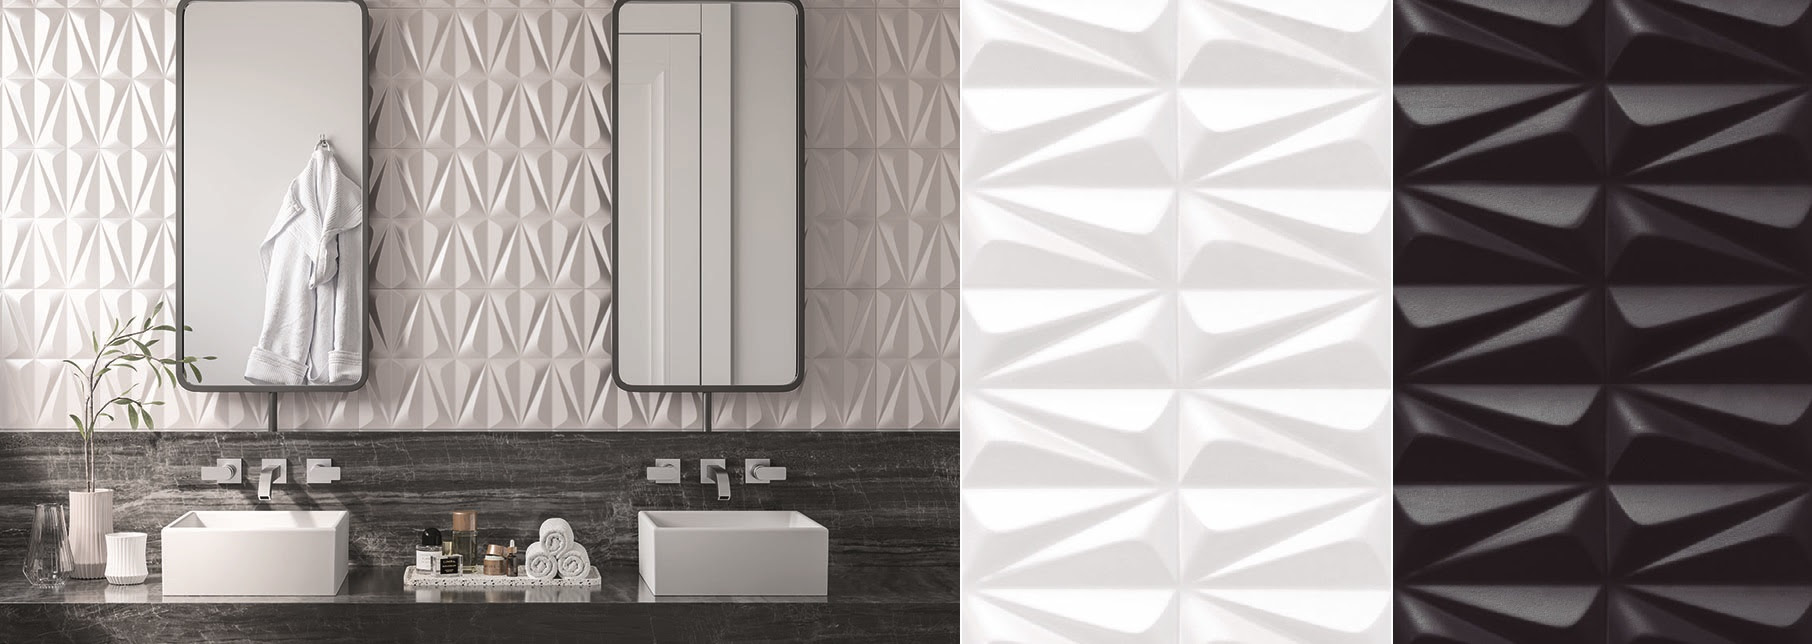 Os insertos da Série Ludo, da Incepa, apresentam um relevo 3D geométrico suavemente ondulado, são retificadas, com encaixe perfeito para juntas imperceptíveis e a continuidade do relevo. O efeito tridimensional das peças se torna ainda mais belo com a incidência da luz e são apresentados nas dimensões 32 x 59 cm em duas versões para paredes internas: branco, nas opções acetinado e brilhante, e o preto apenas com o acabamento acetinado | Imagens: divulgação